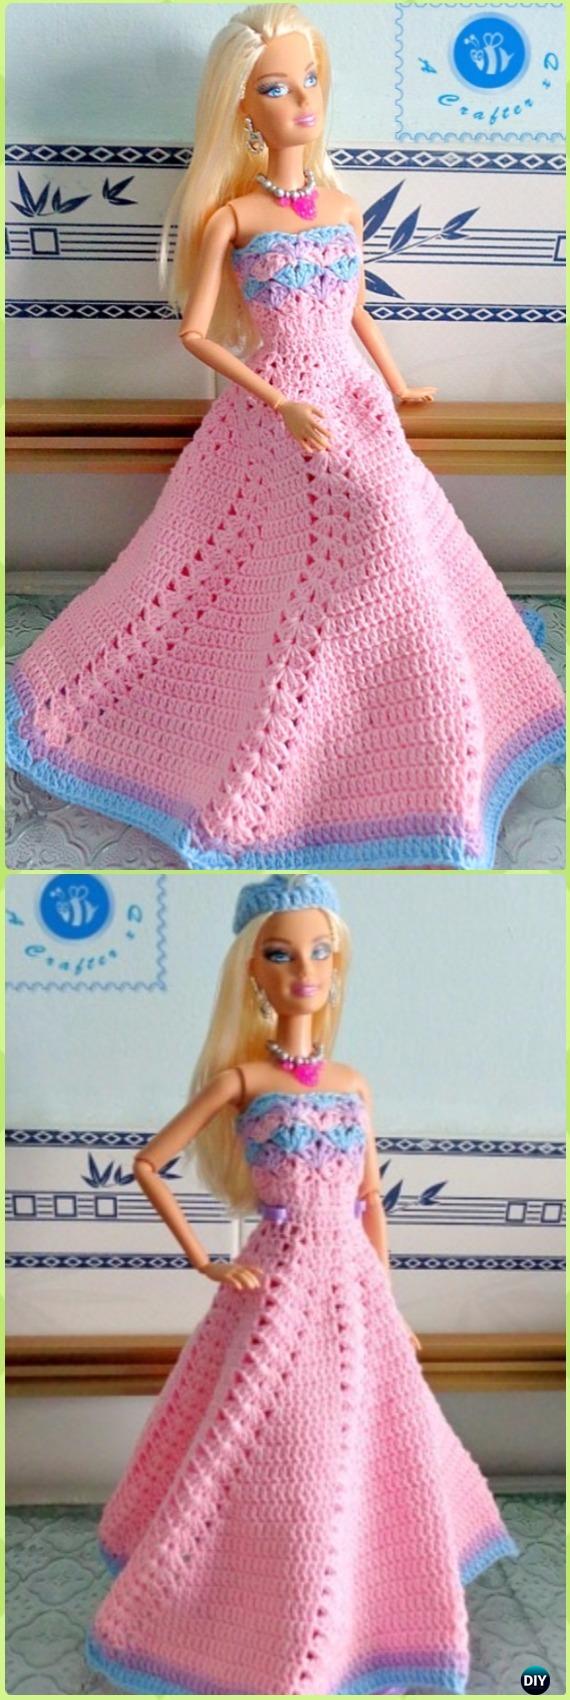 barbie doll crochet patterns